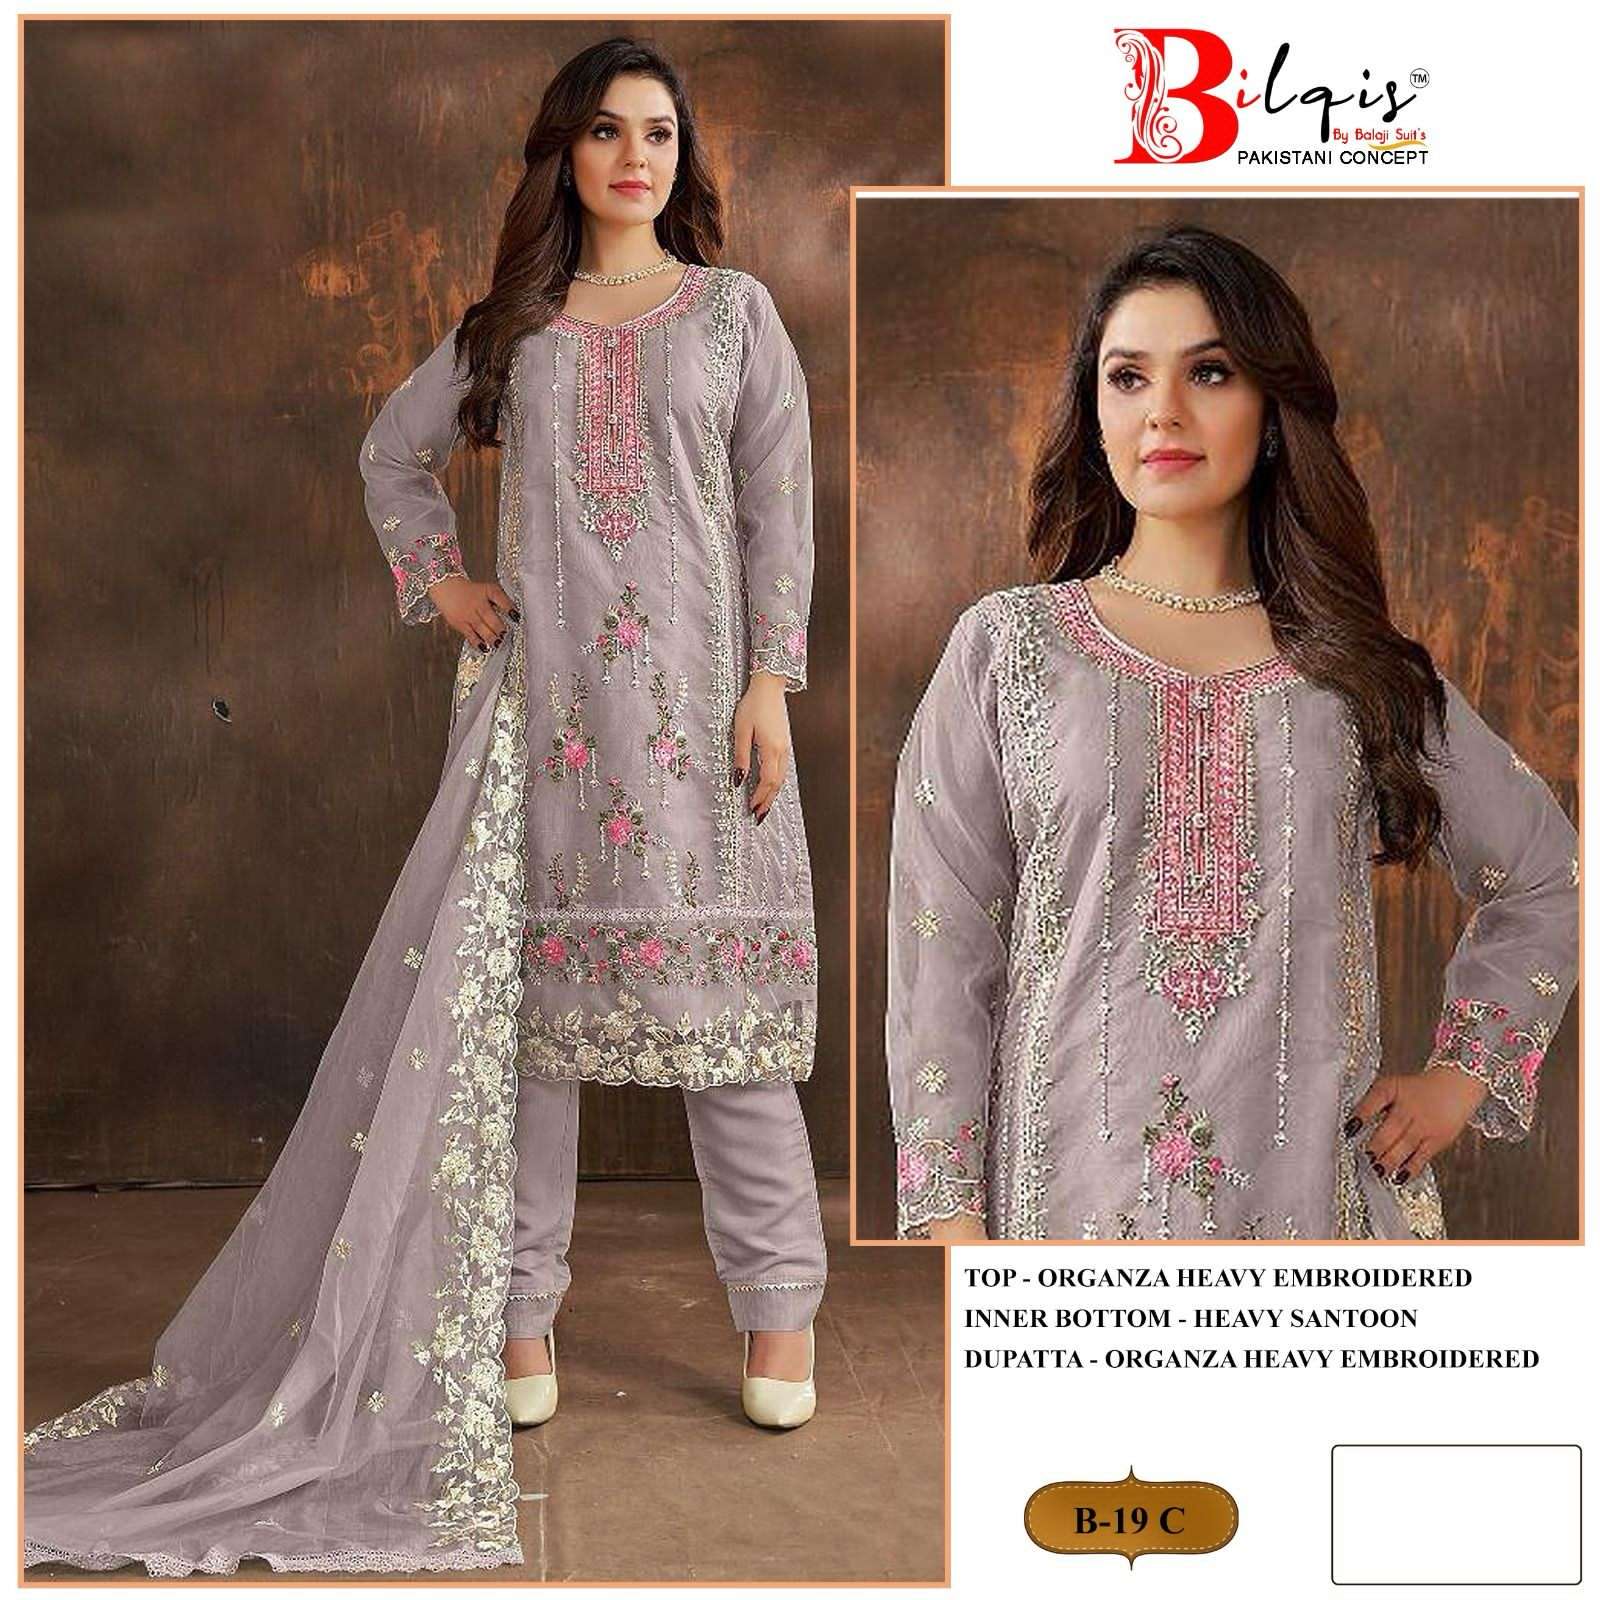 bilqis b-19a to d series designer pakistani salwar kameez wholesaler surat gujarat